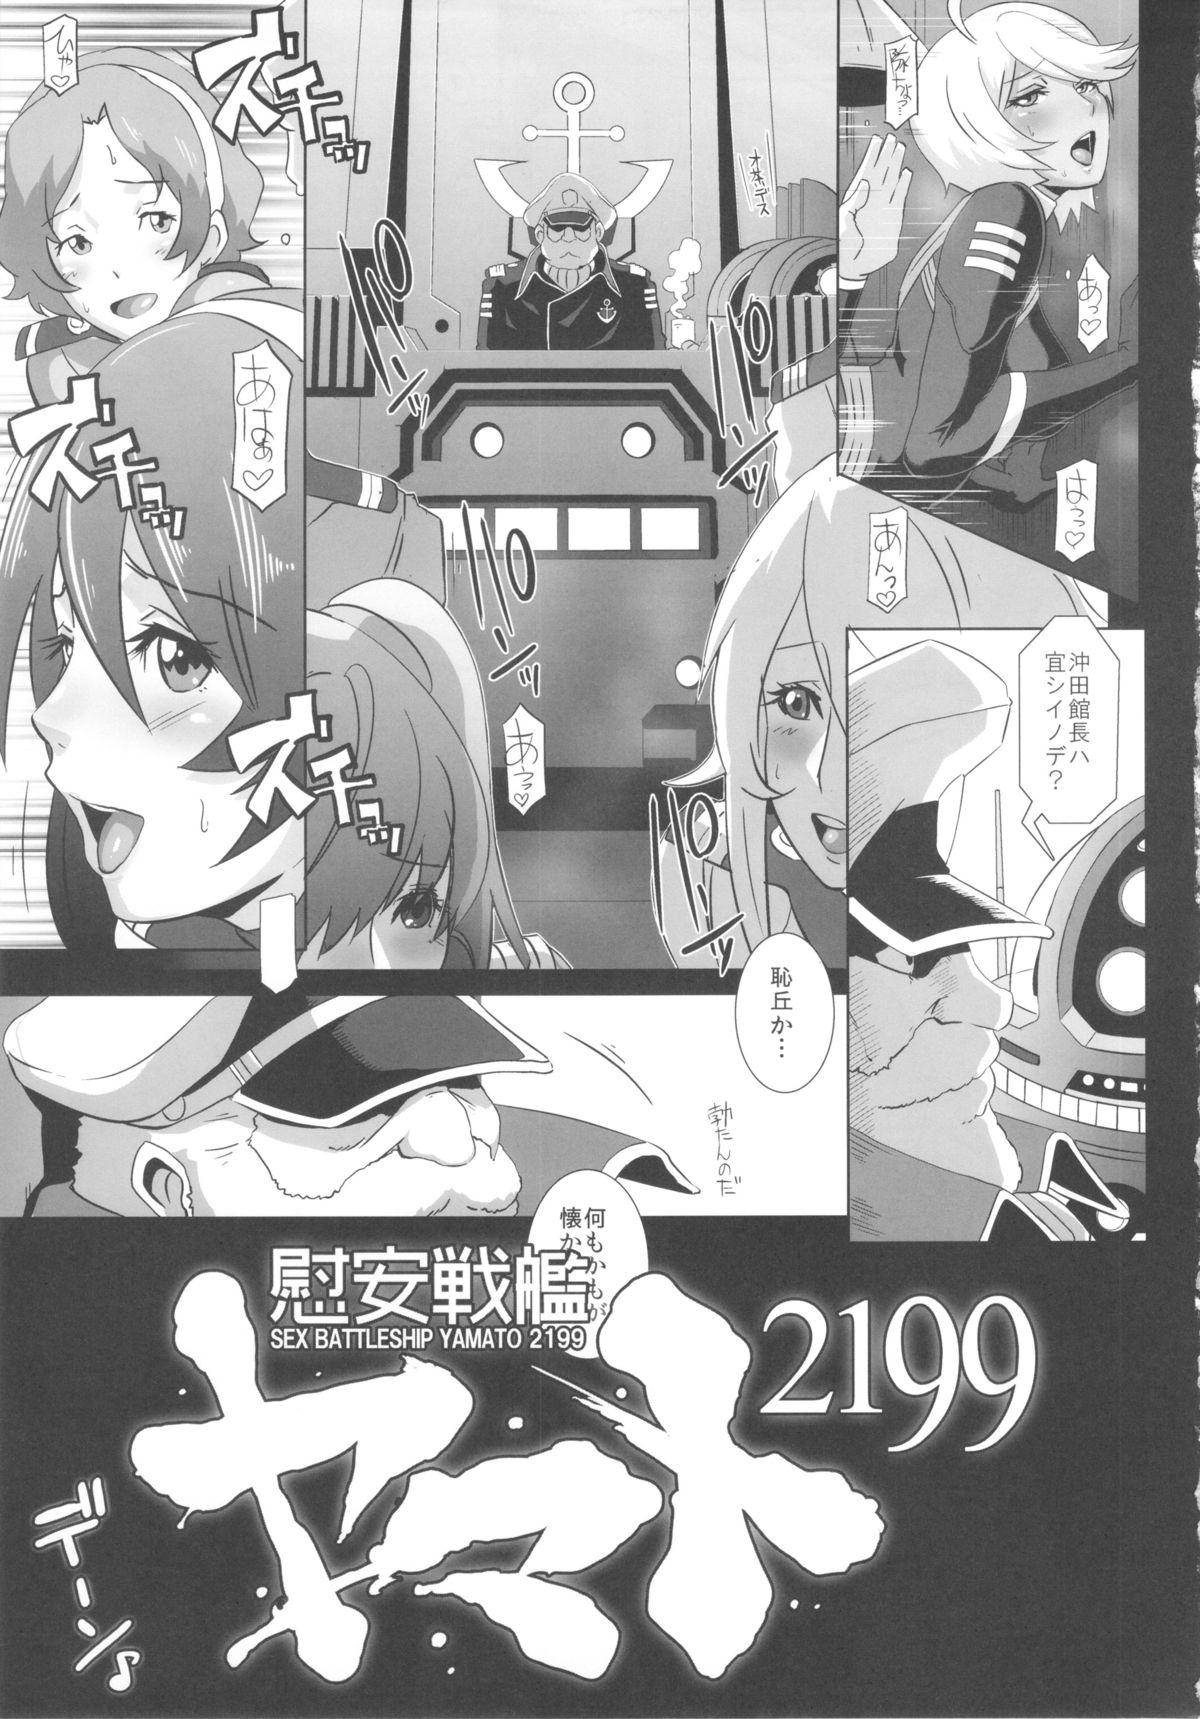 Piroca Ian Senkan Yamato 2199 - Space battleship yamato Amazing - Page 5